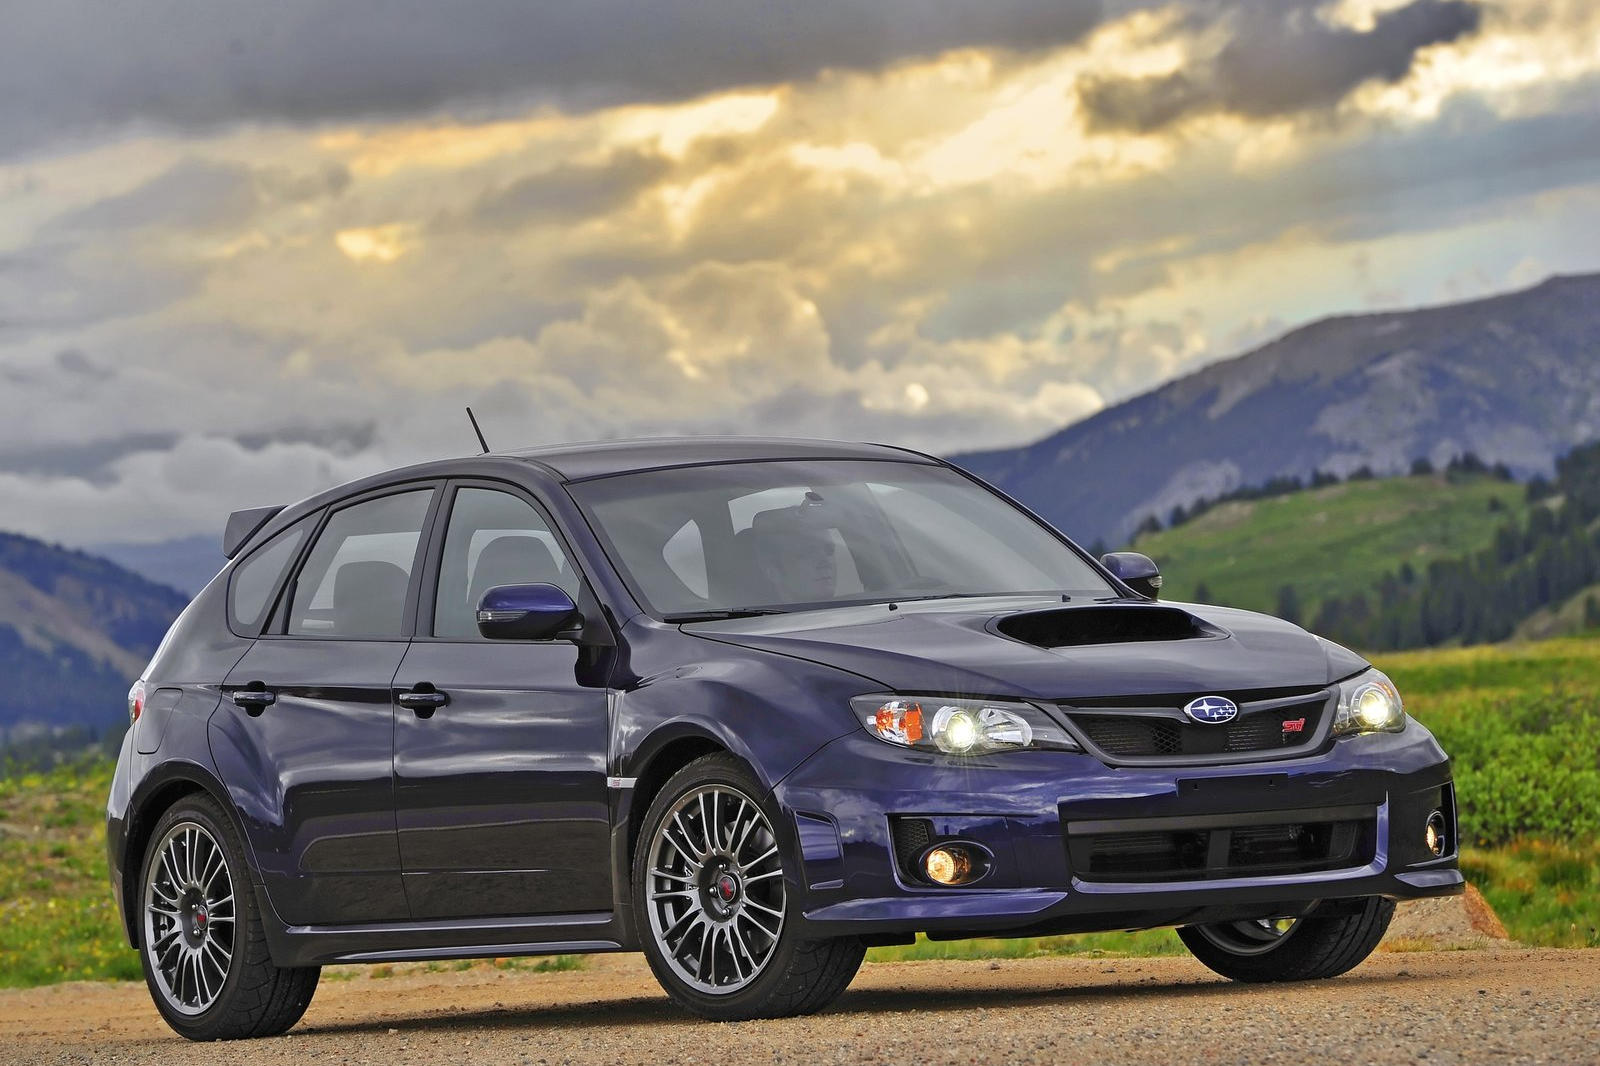 2011 Subaru Impreza WRX STI Hatchback: Review, Trims, Specs, Price, New